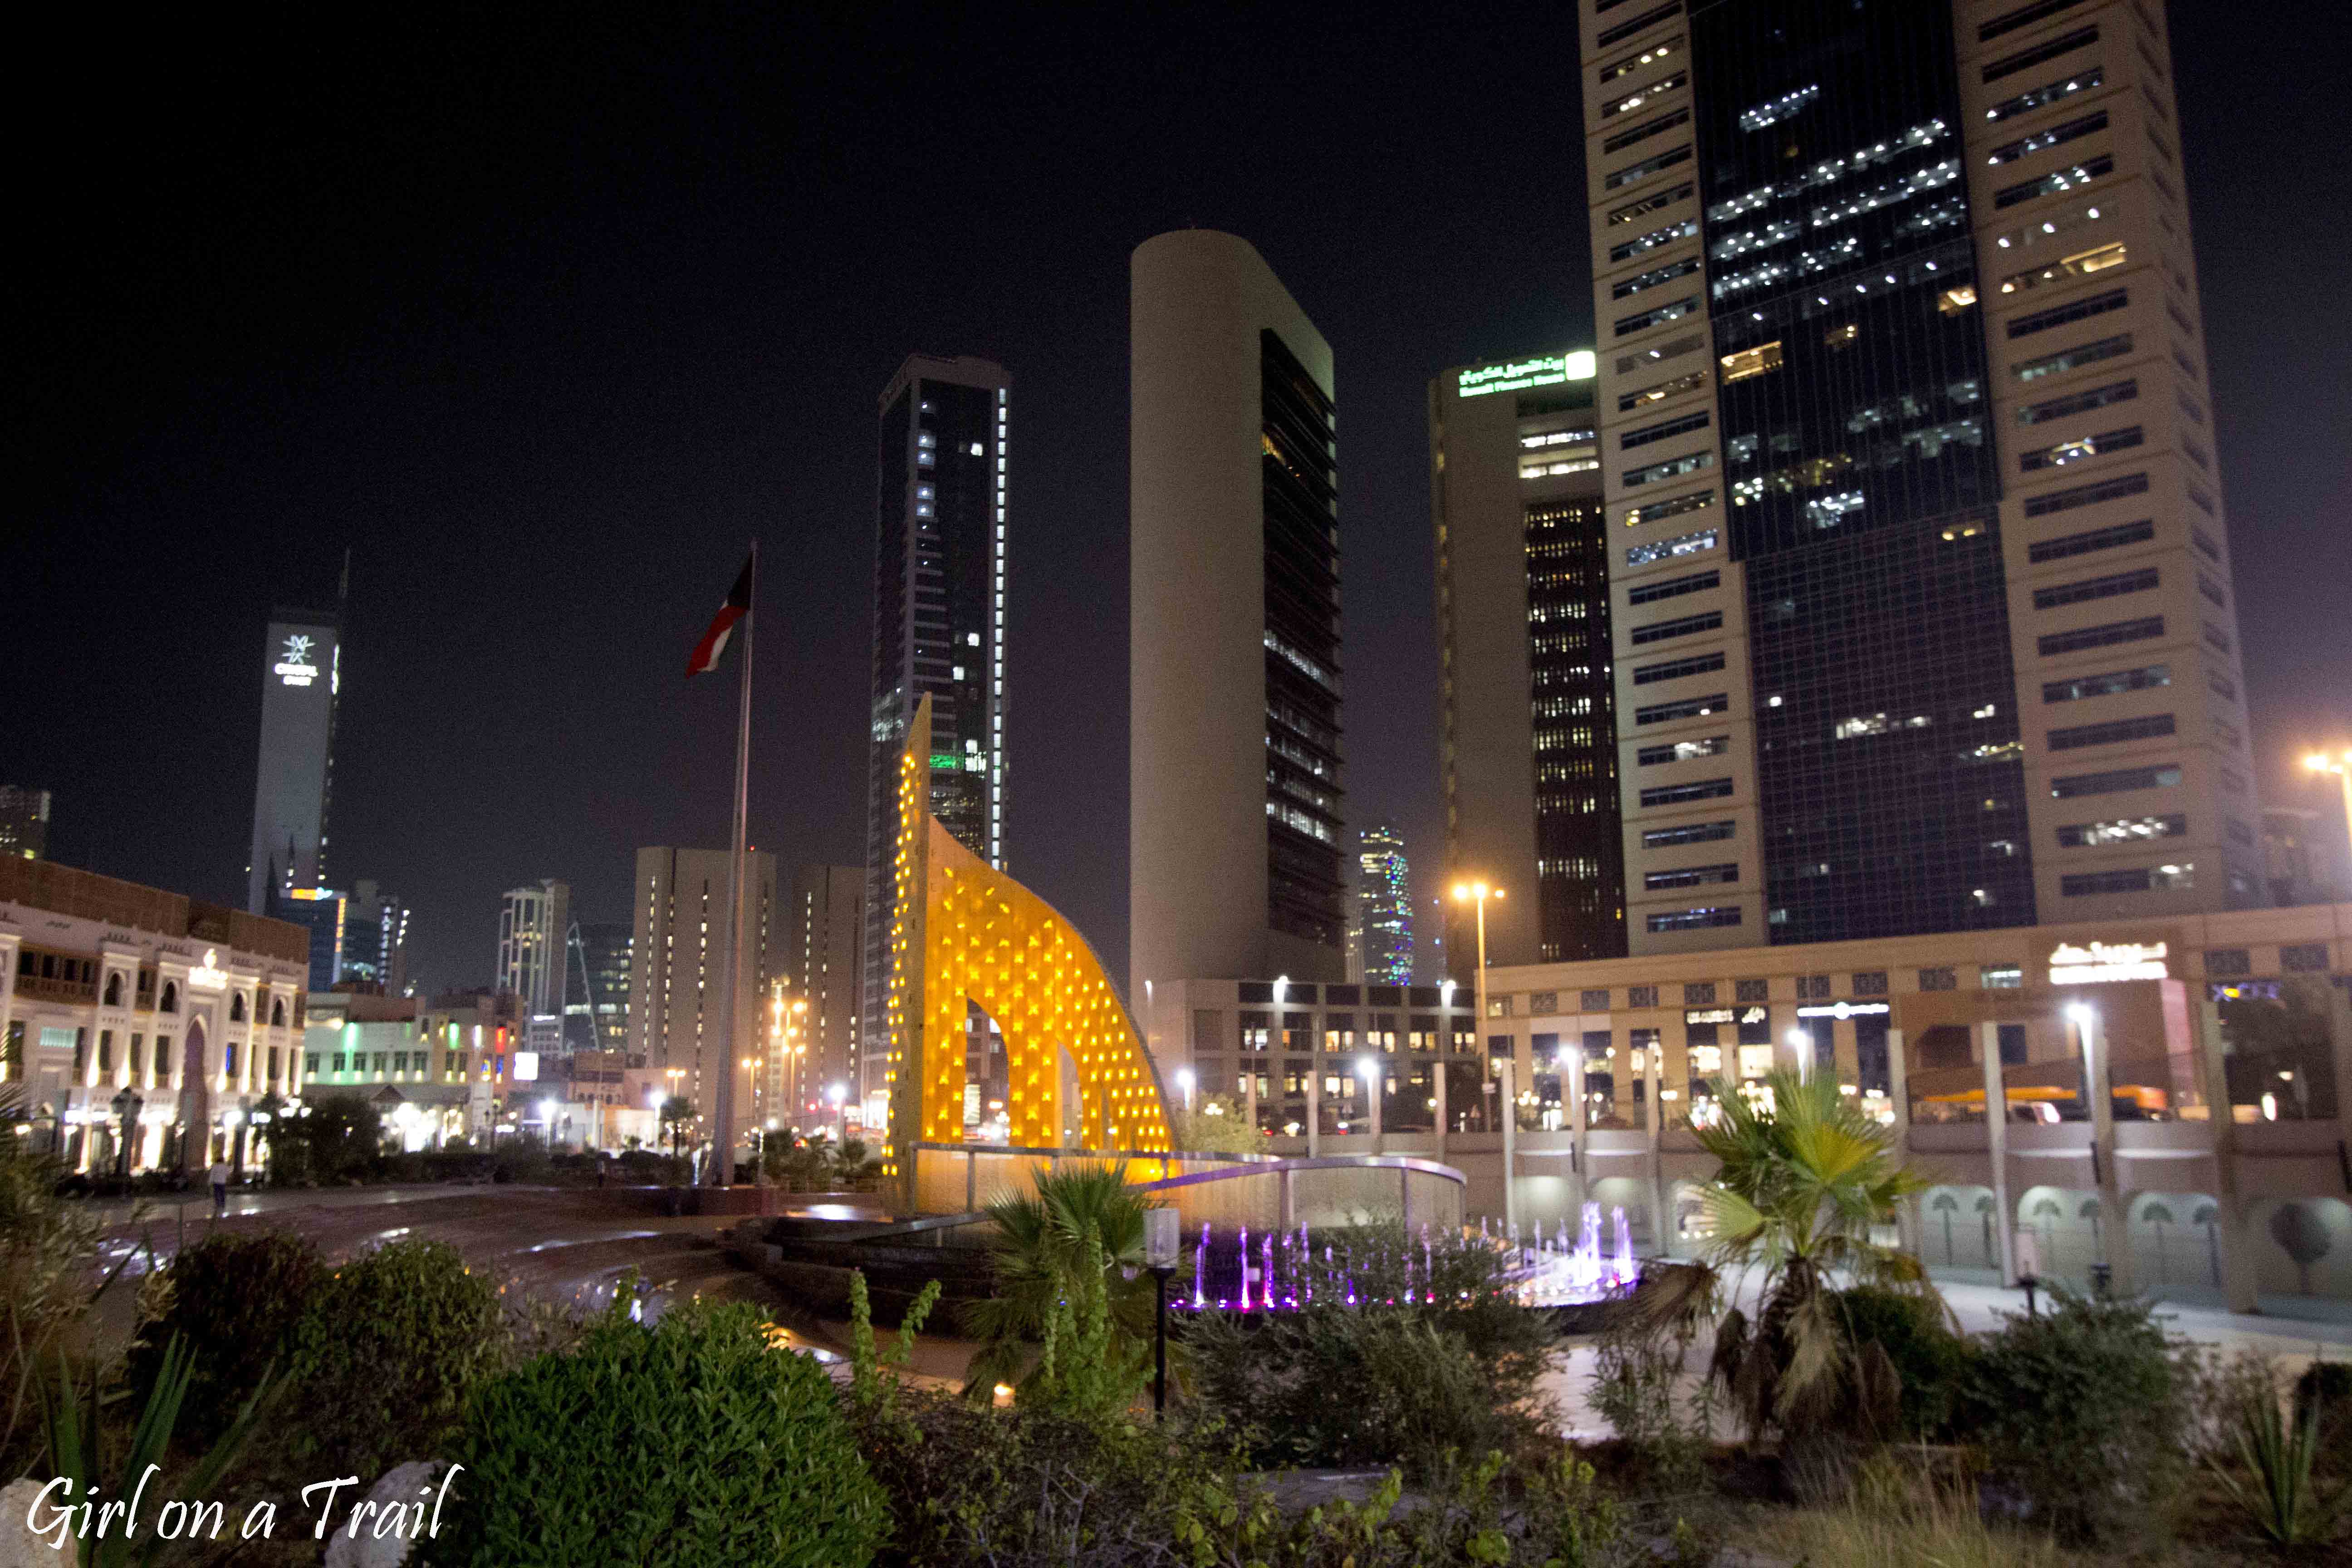 Kuwejt City